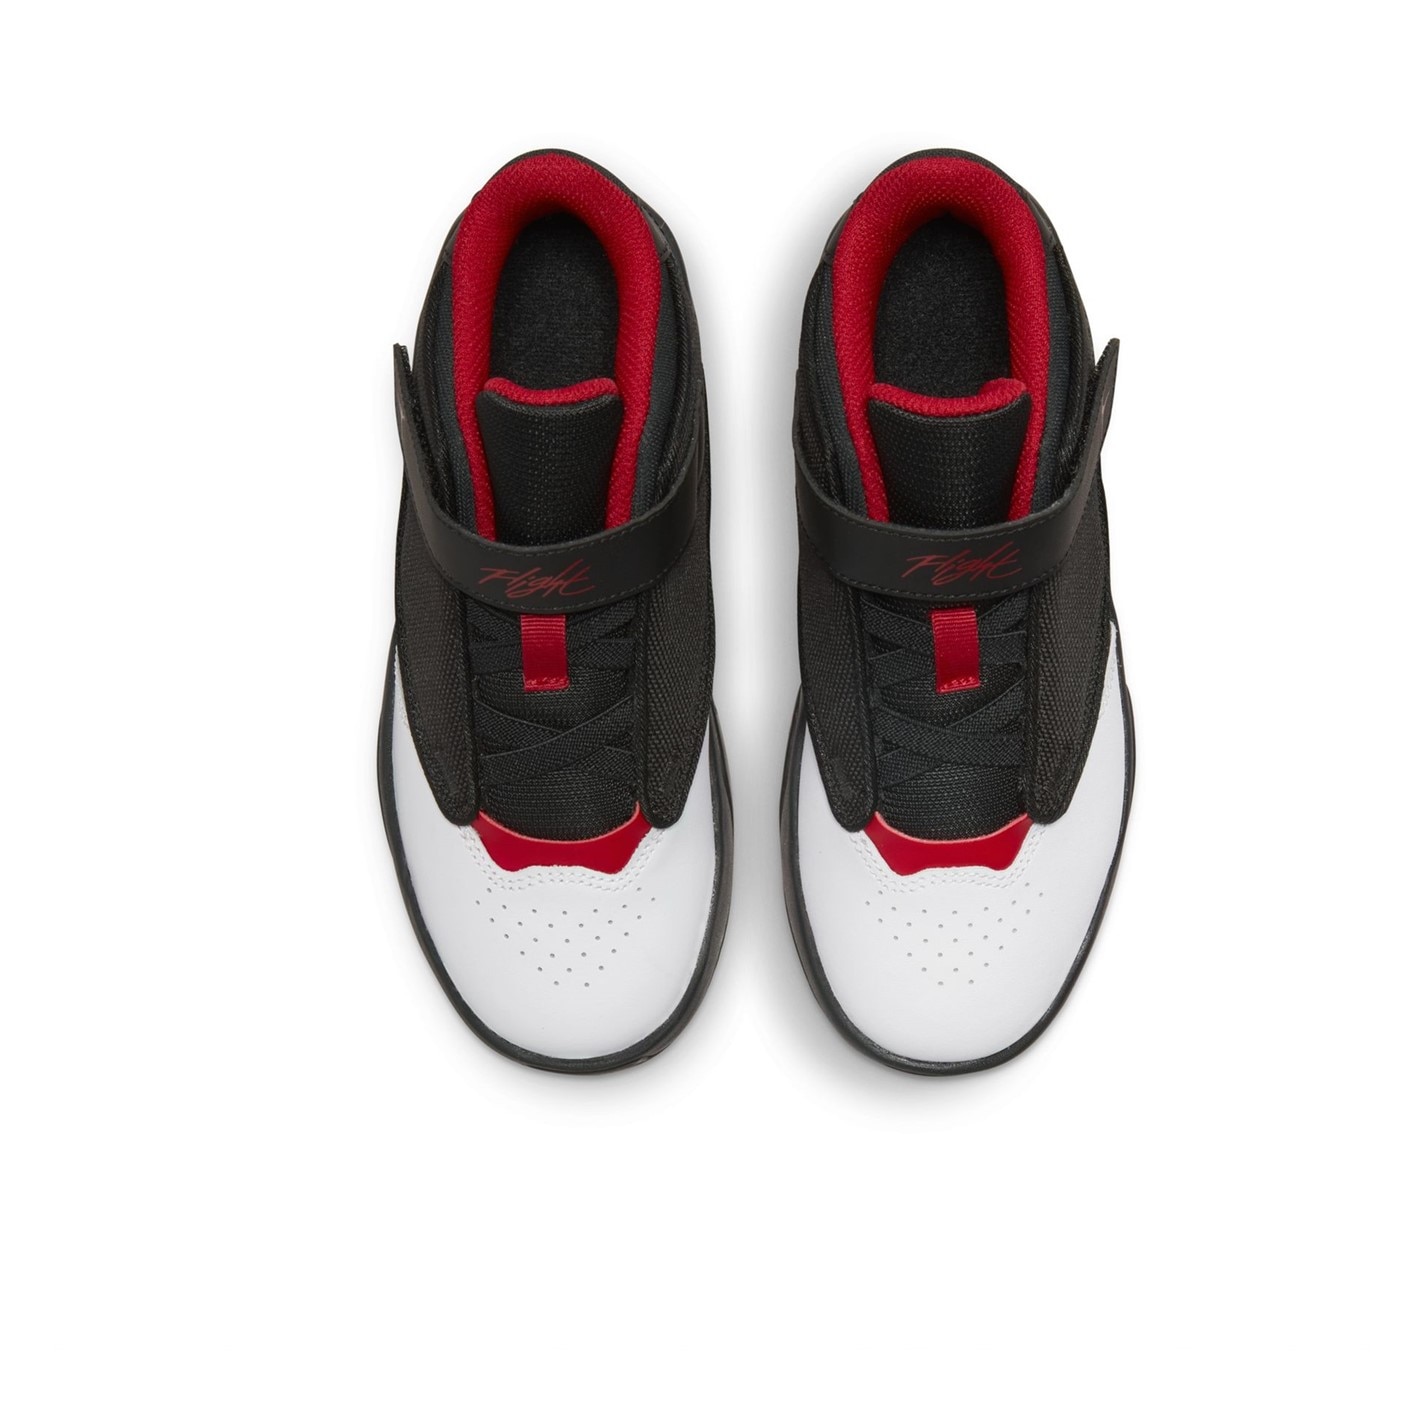 Air Jordan Max Aura 4 Little Shoes pentru Copii negru rosu alb